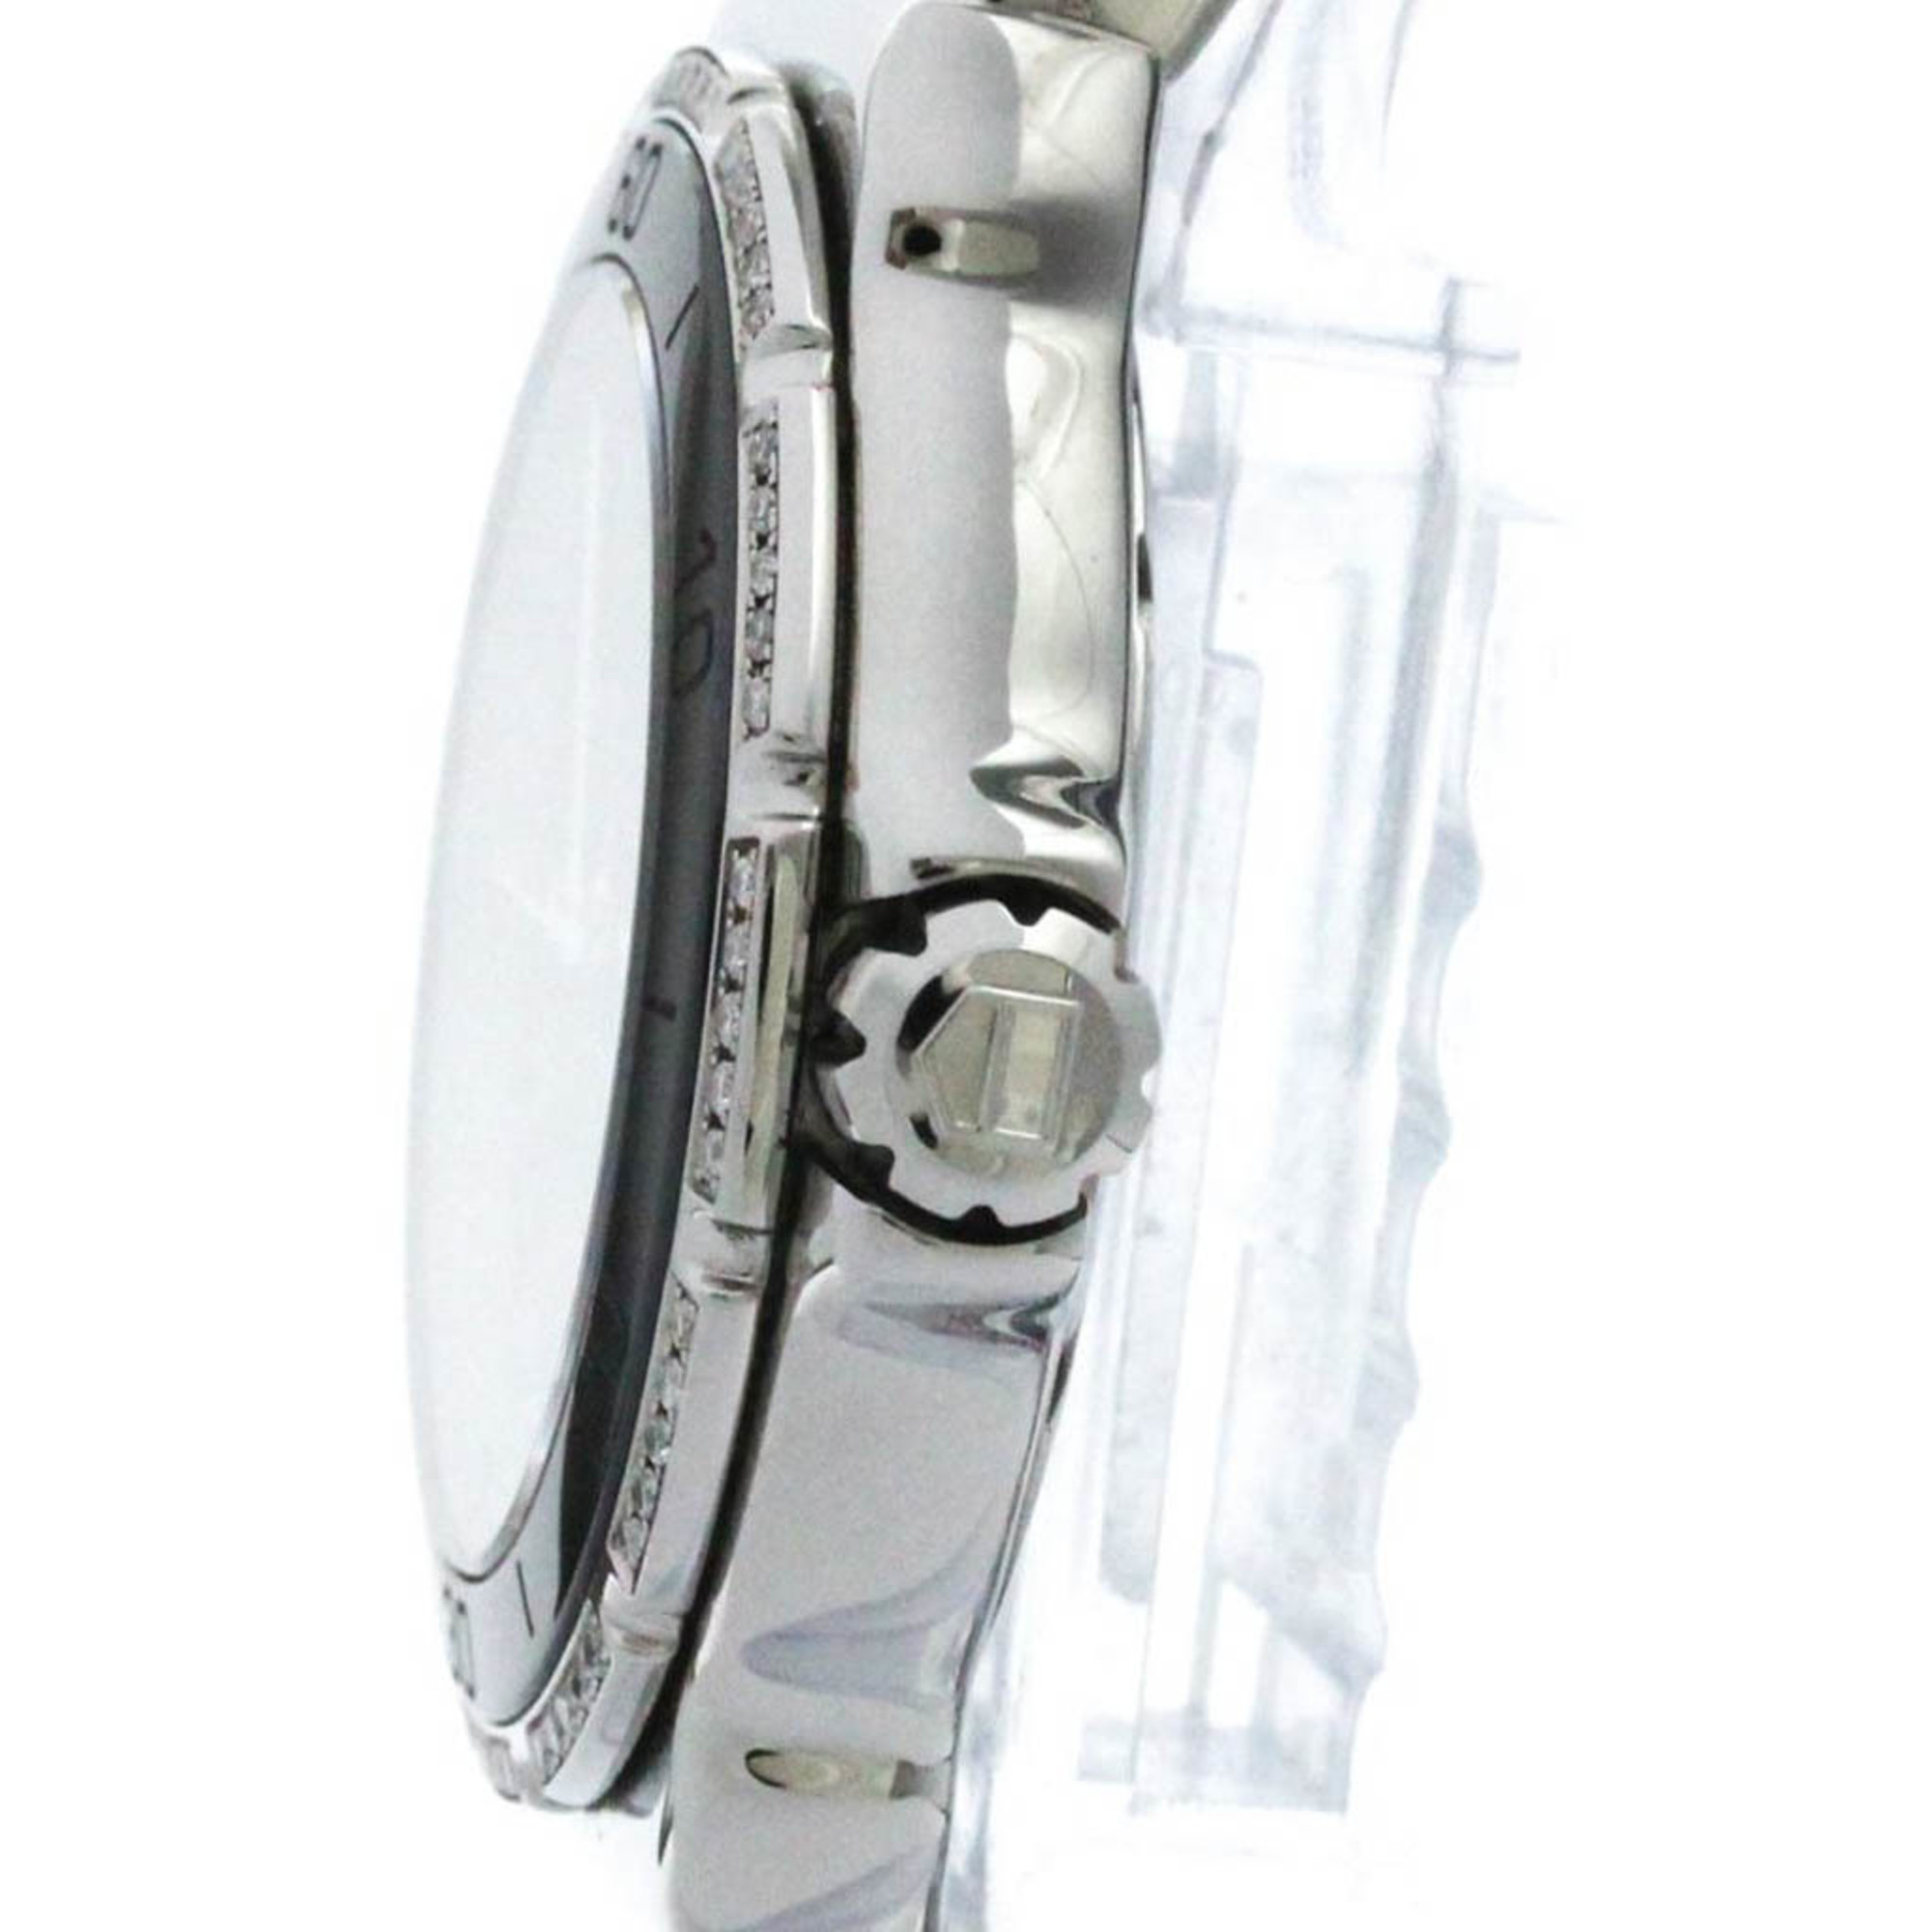 タグホイヤー (TAG HEUER) フォーミュラー1 ダイヤモンド ステンレススチール クォーツ レディース 時計 WAH1212 (外装仕上げ済み)【中古】